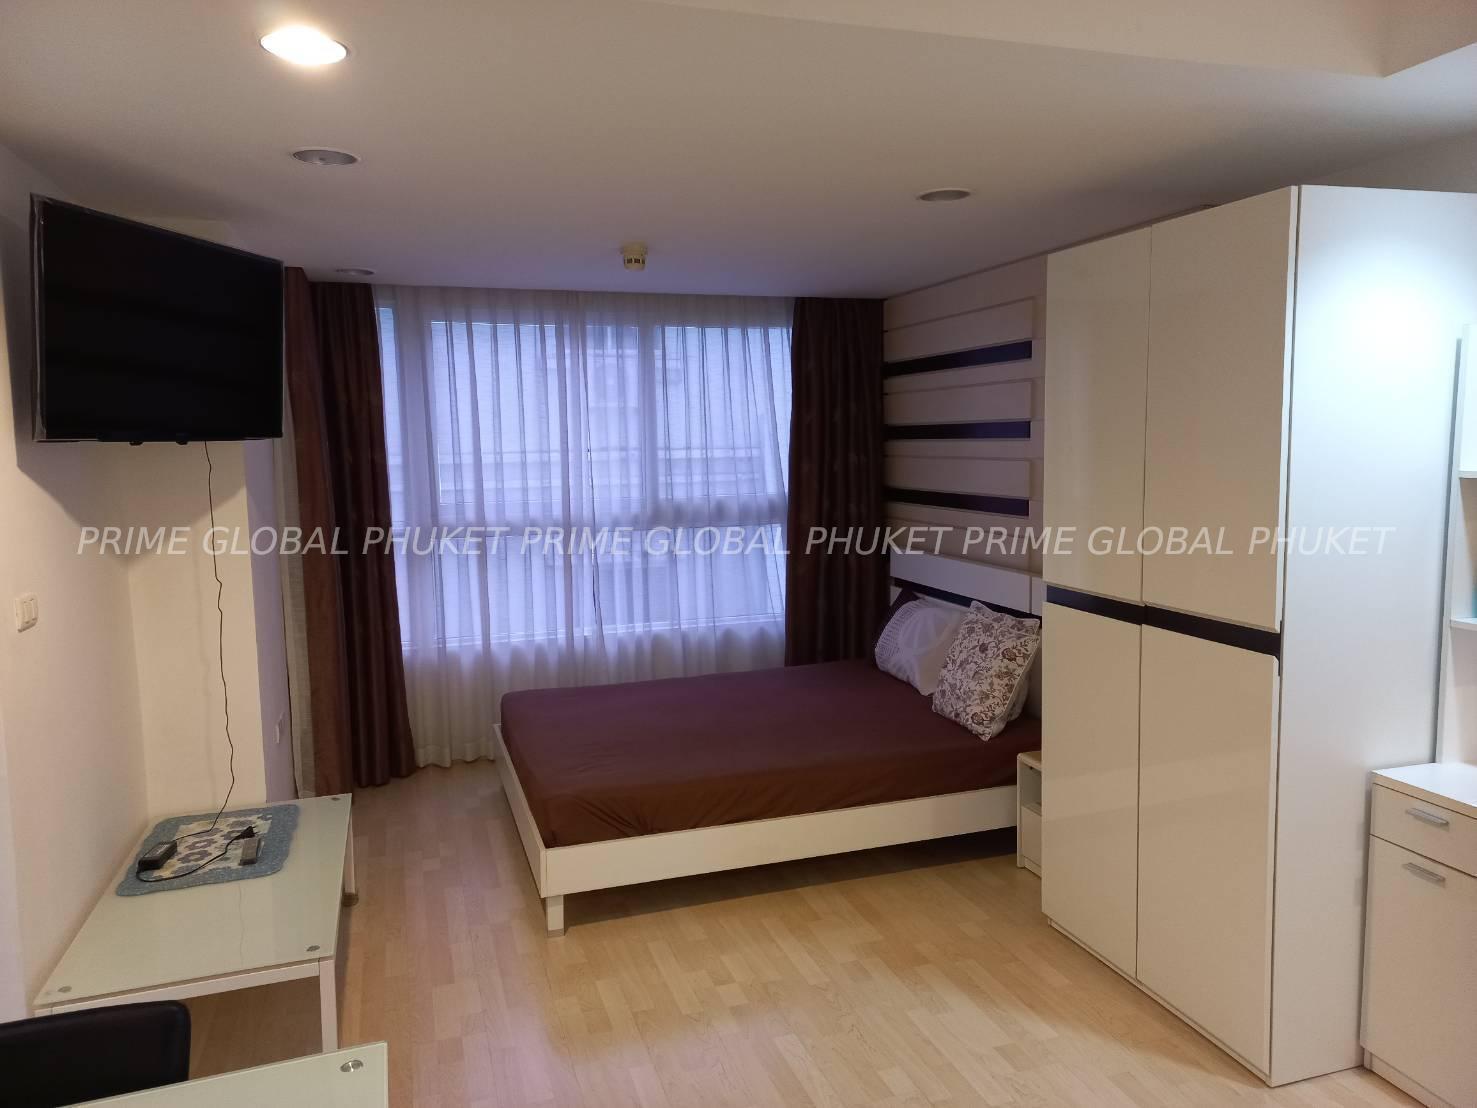 33 Sq.m Condominium for Rent in Phuket town